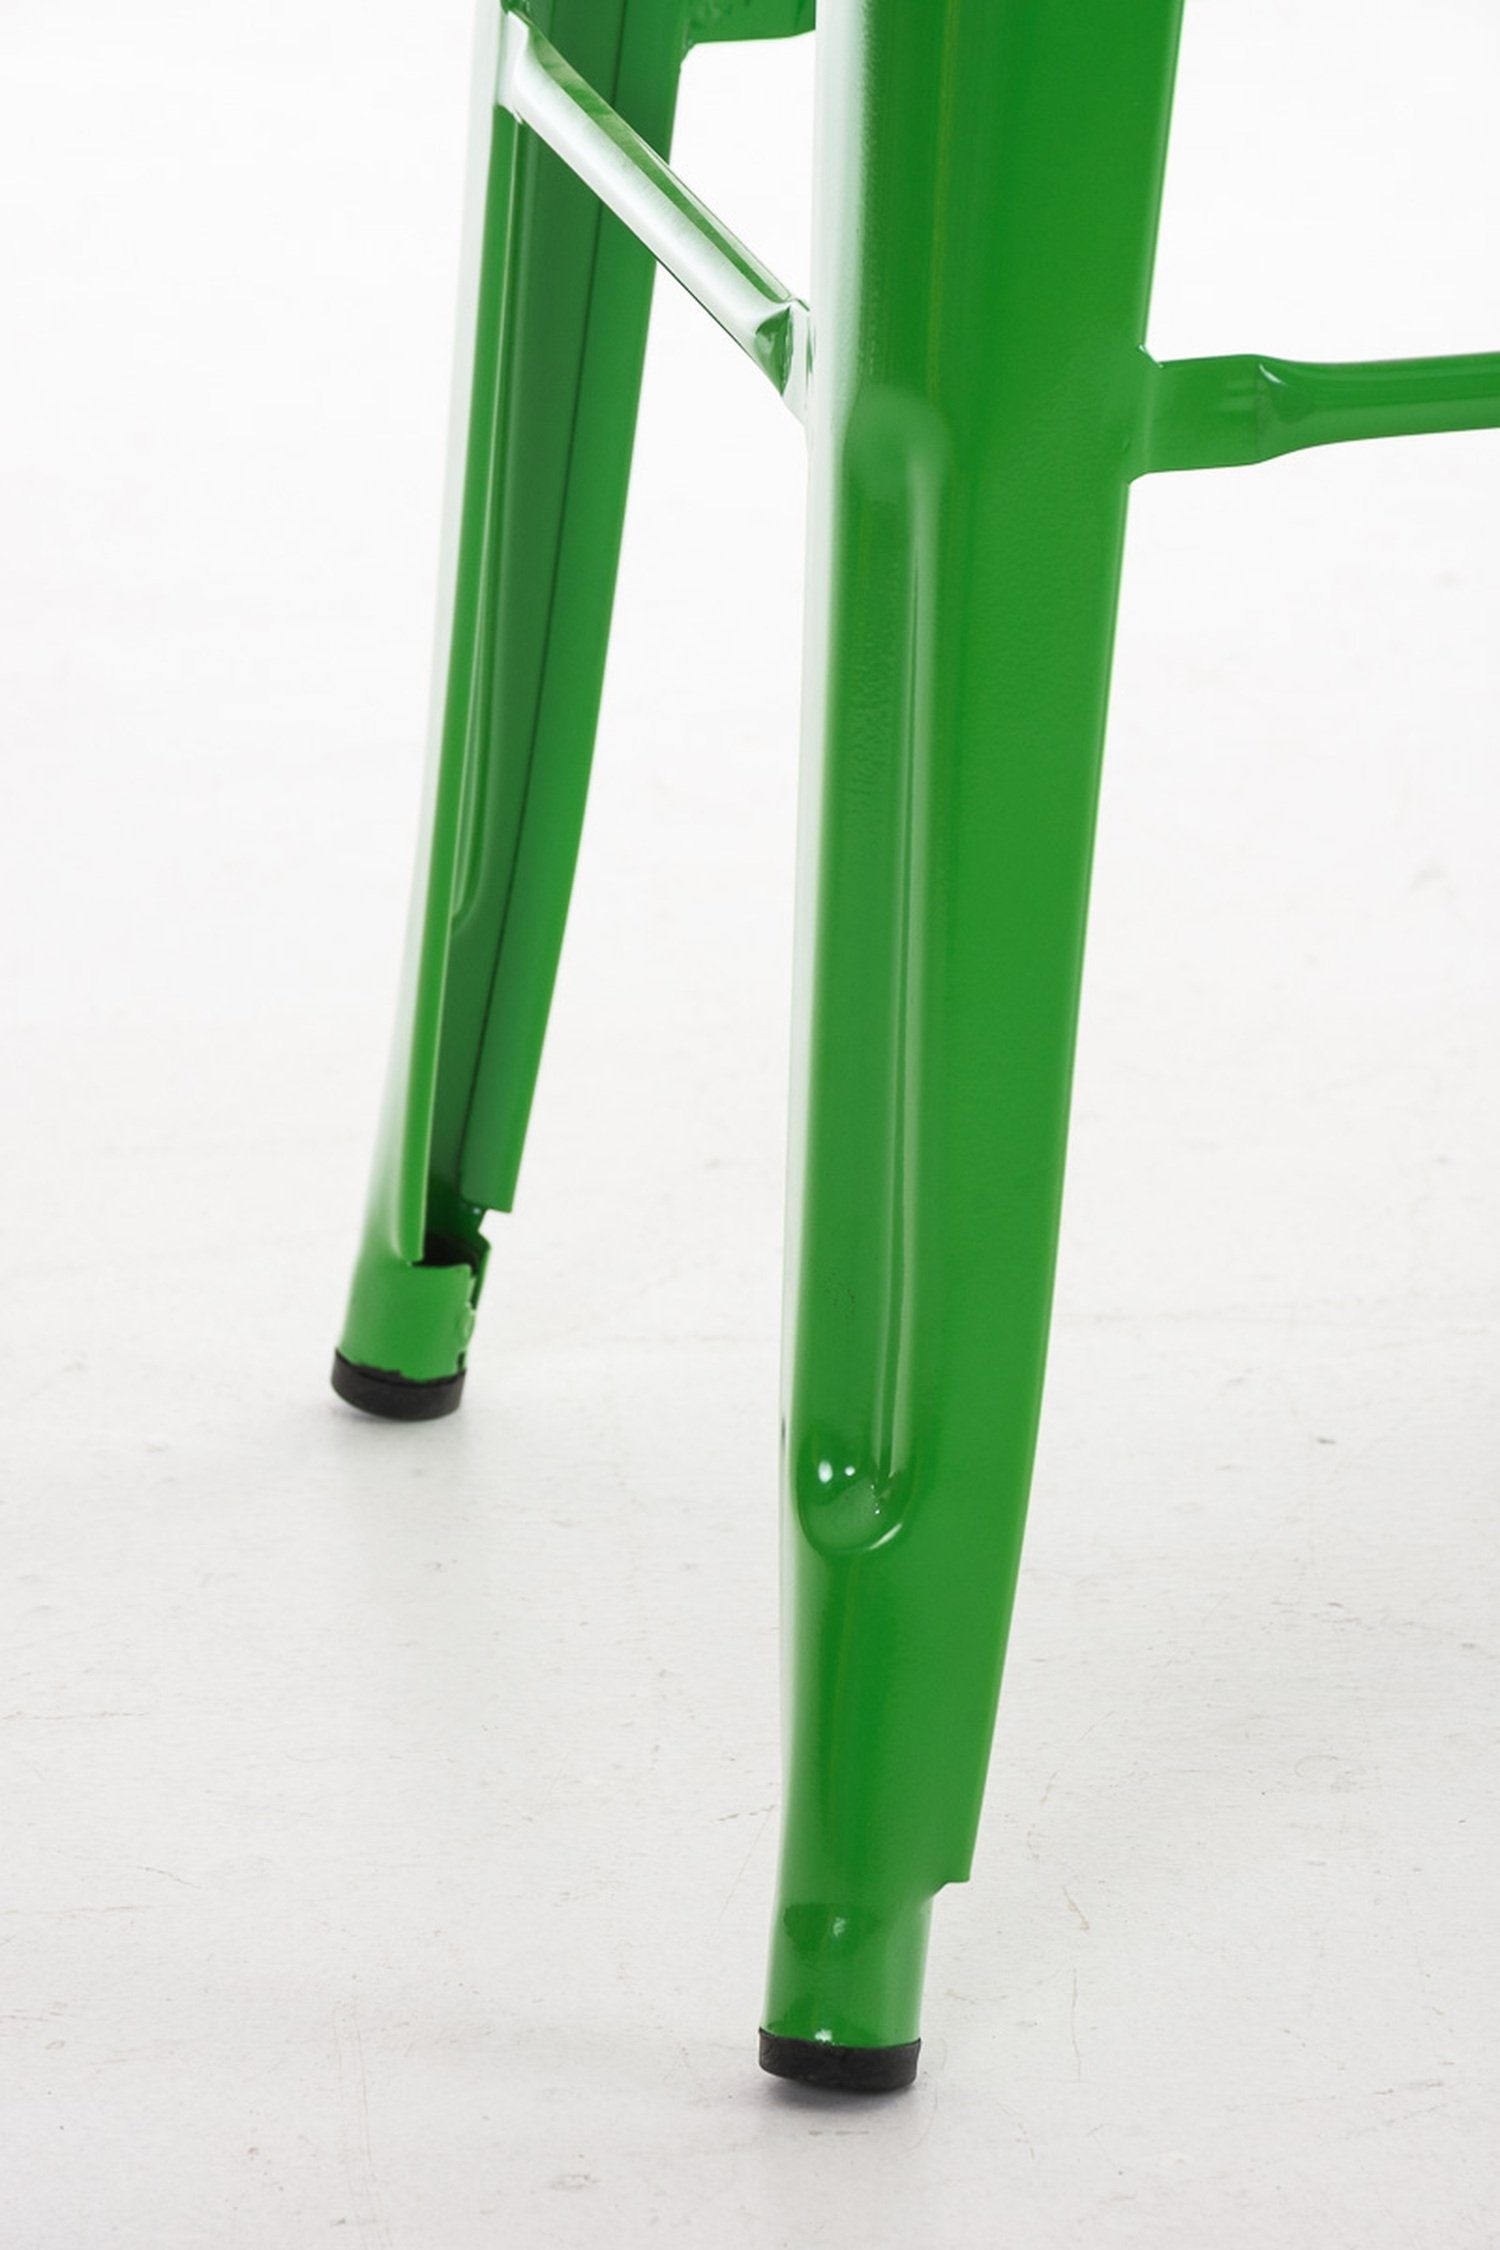 - Grün Sitzfläche: für Küche), Metall Barhocker Metall Gestell Fußstütze Joshua angenehmer (mit Hocker & TPFLiving Theke - Grün